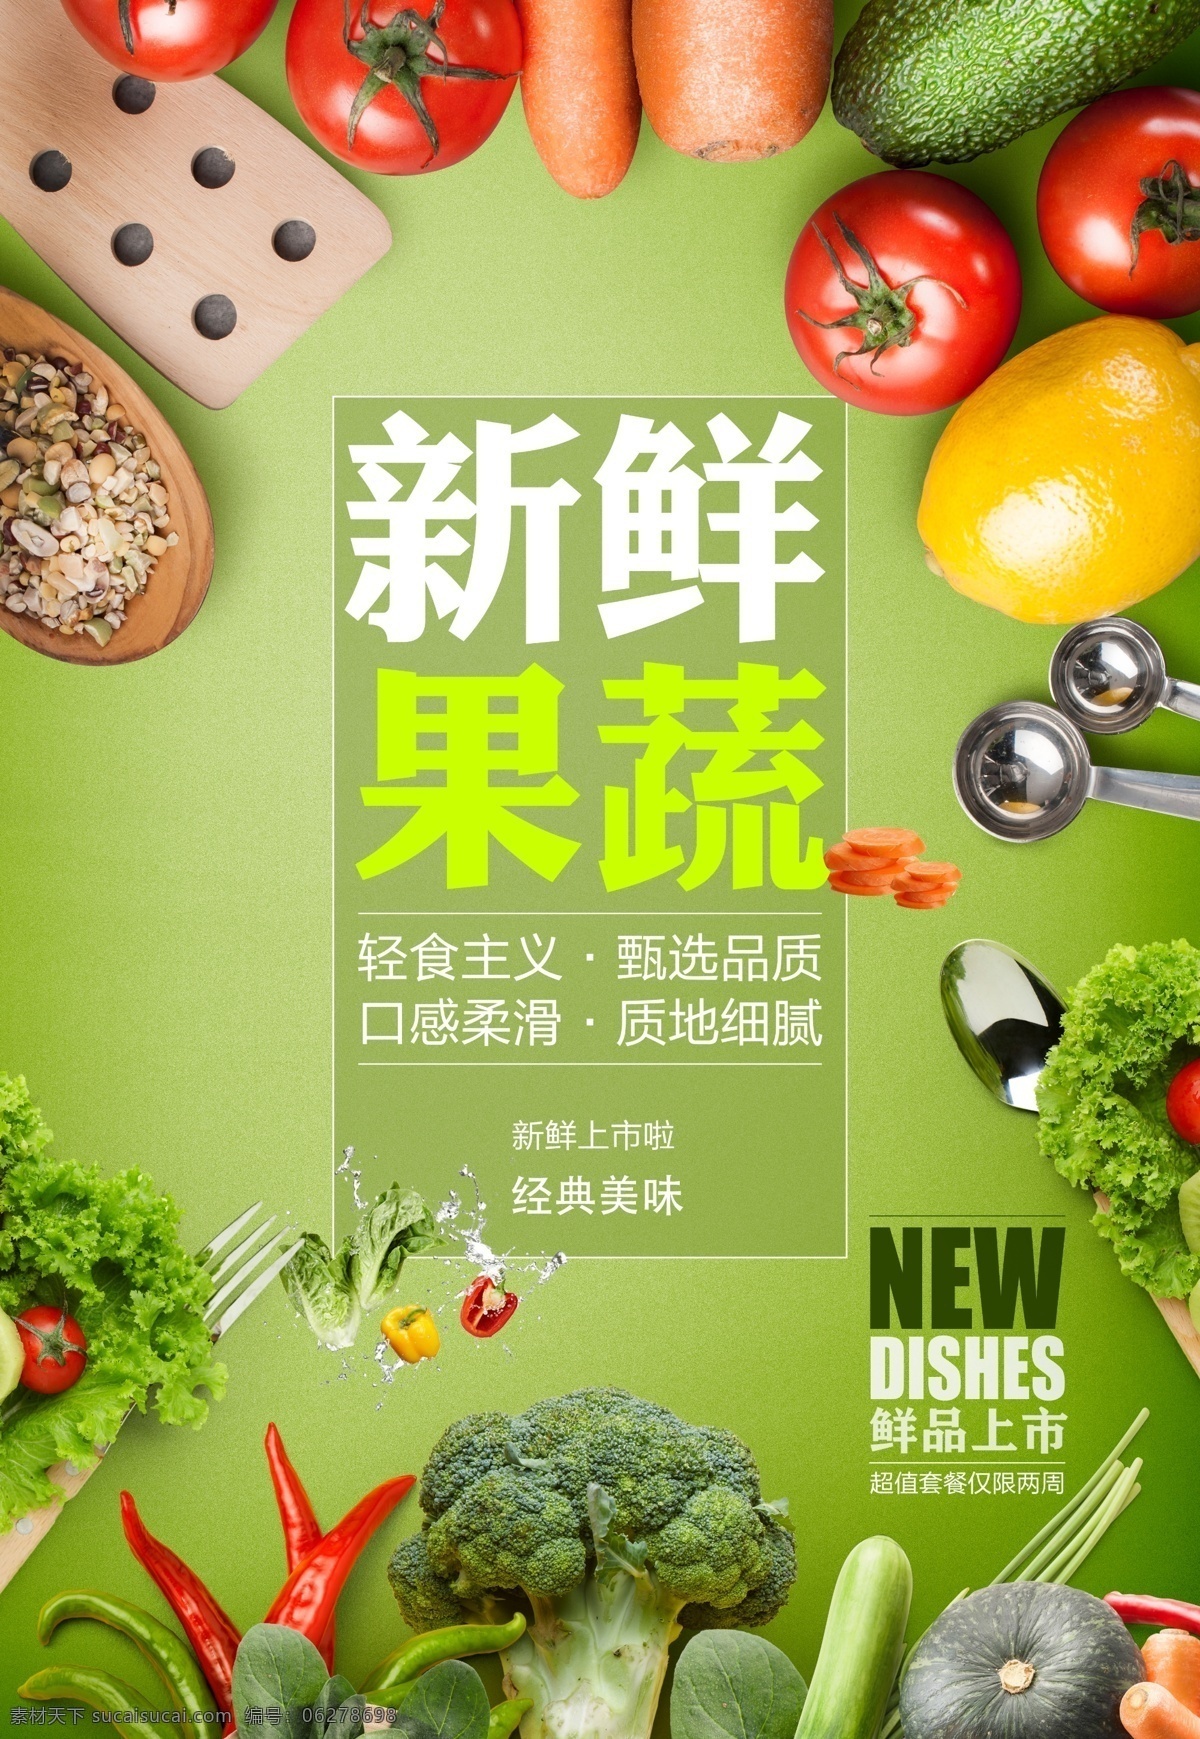 新鲜果蔬图片 新鲜果蔬 蔬菜 胡萝卜 食品 健康 饮食 绿色 营养 有机 无公害蔬菜 蔬菜农场